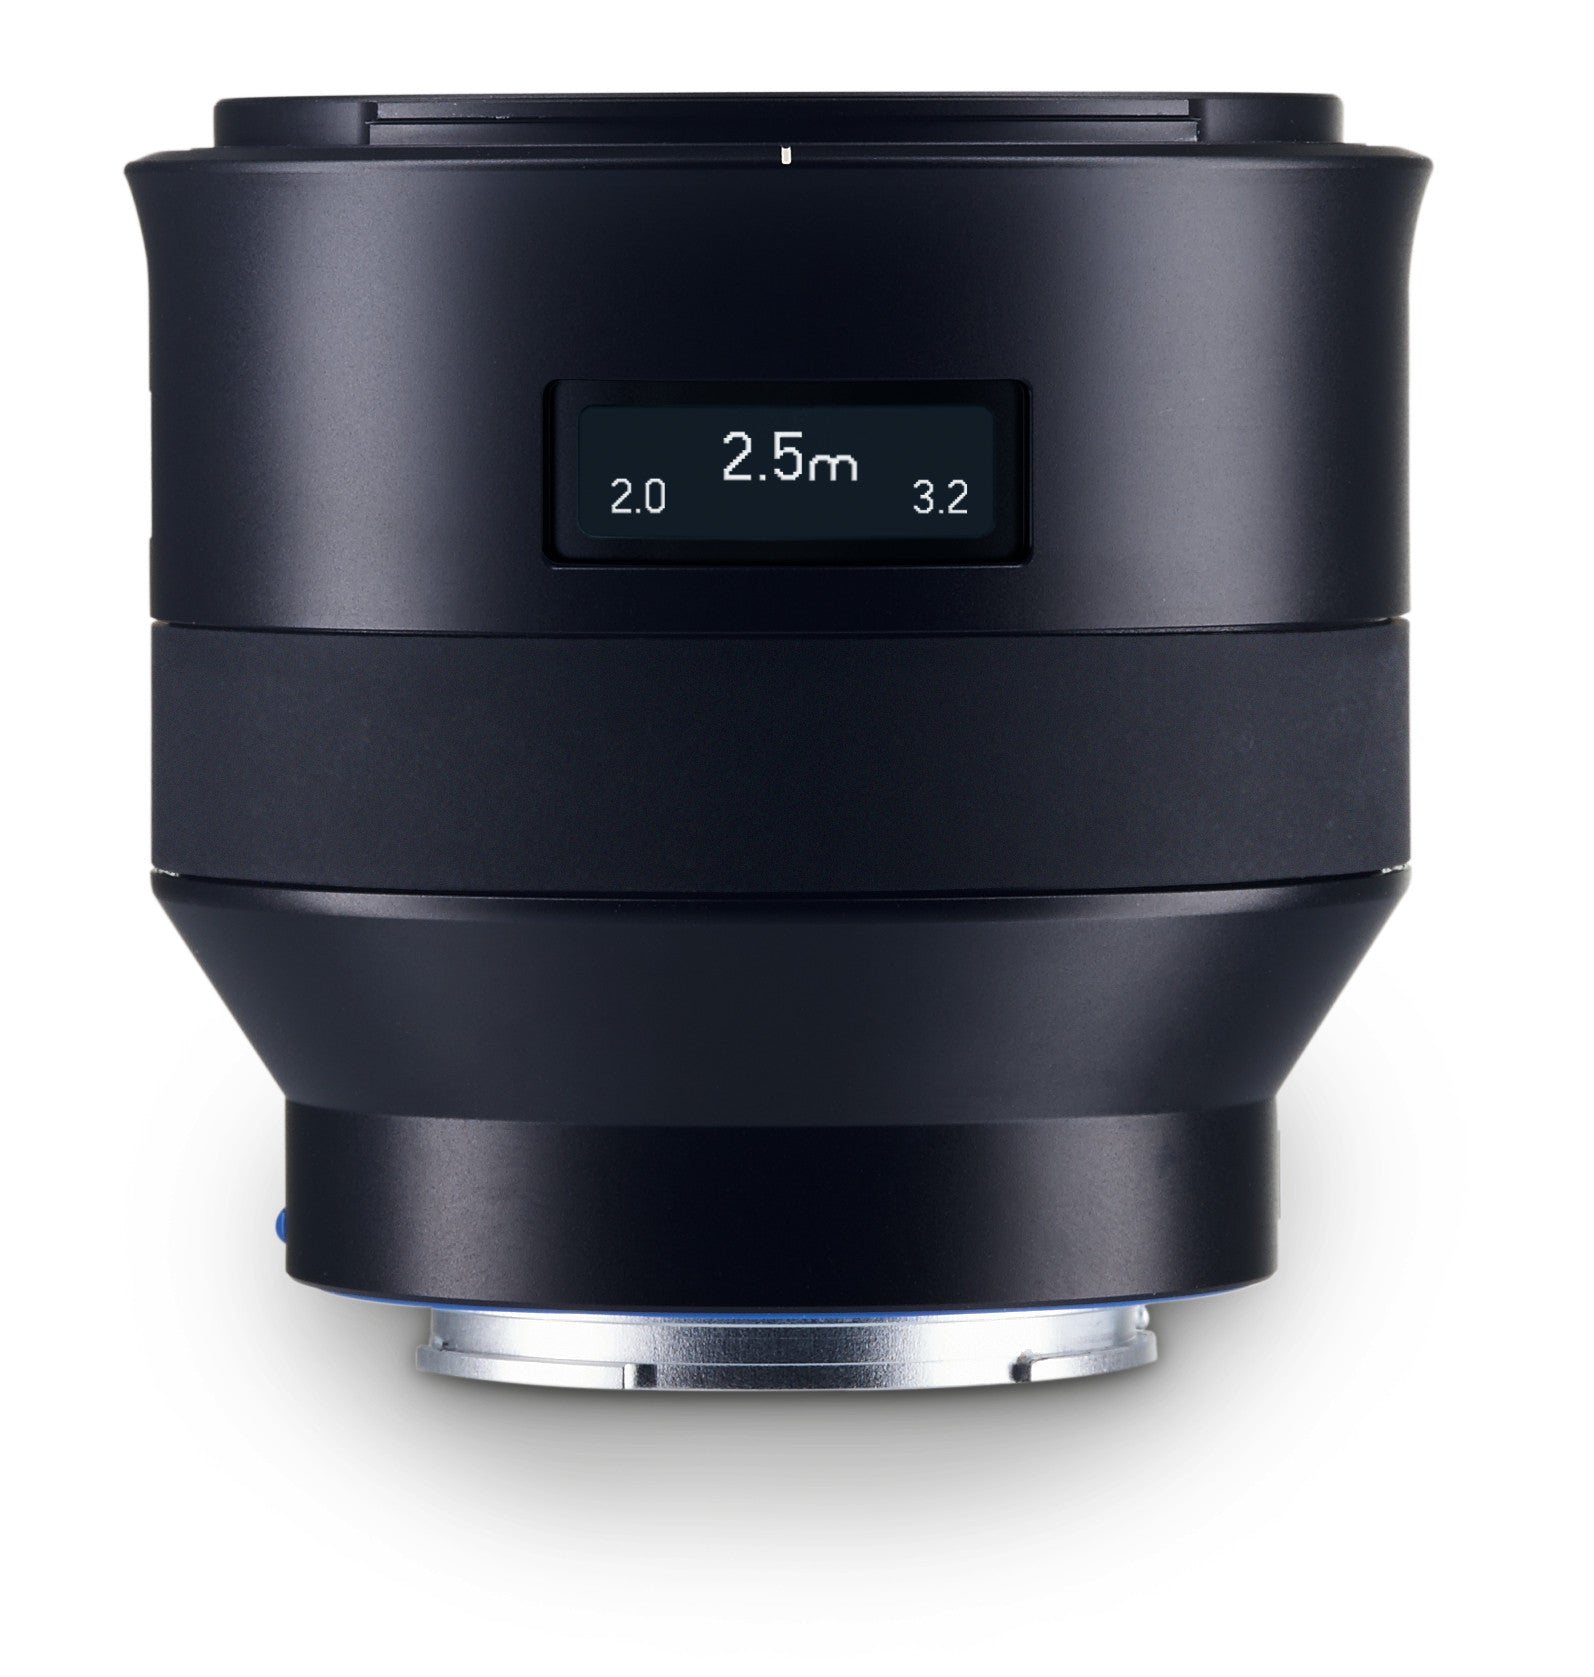 Zeiss Batis 25mm f2.0 Lens for Sony E-Mount, lenses mirrorless, Zeiss - Pictureline  - 2